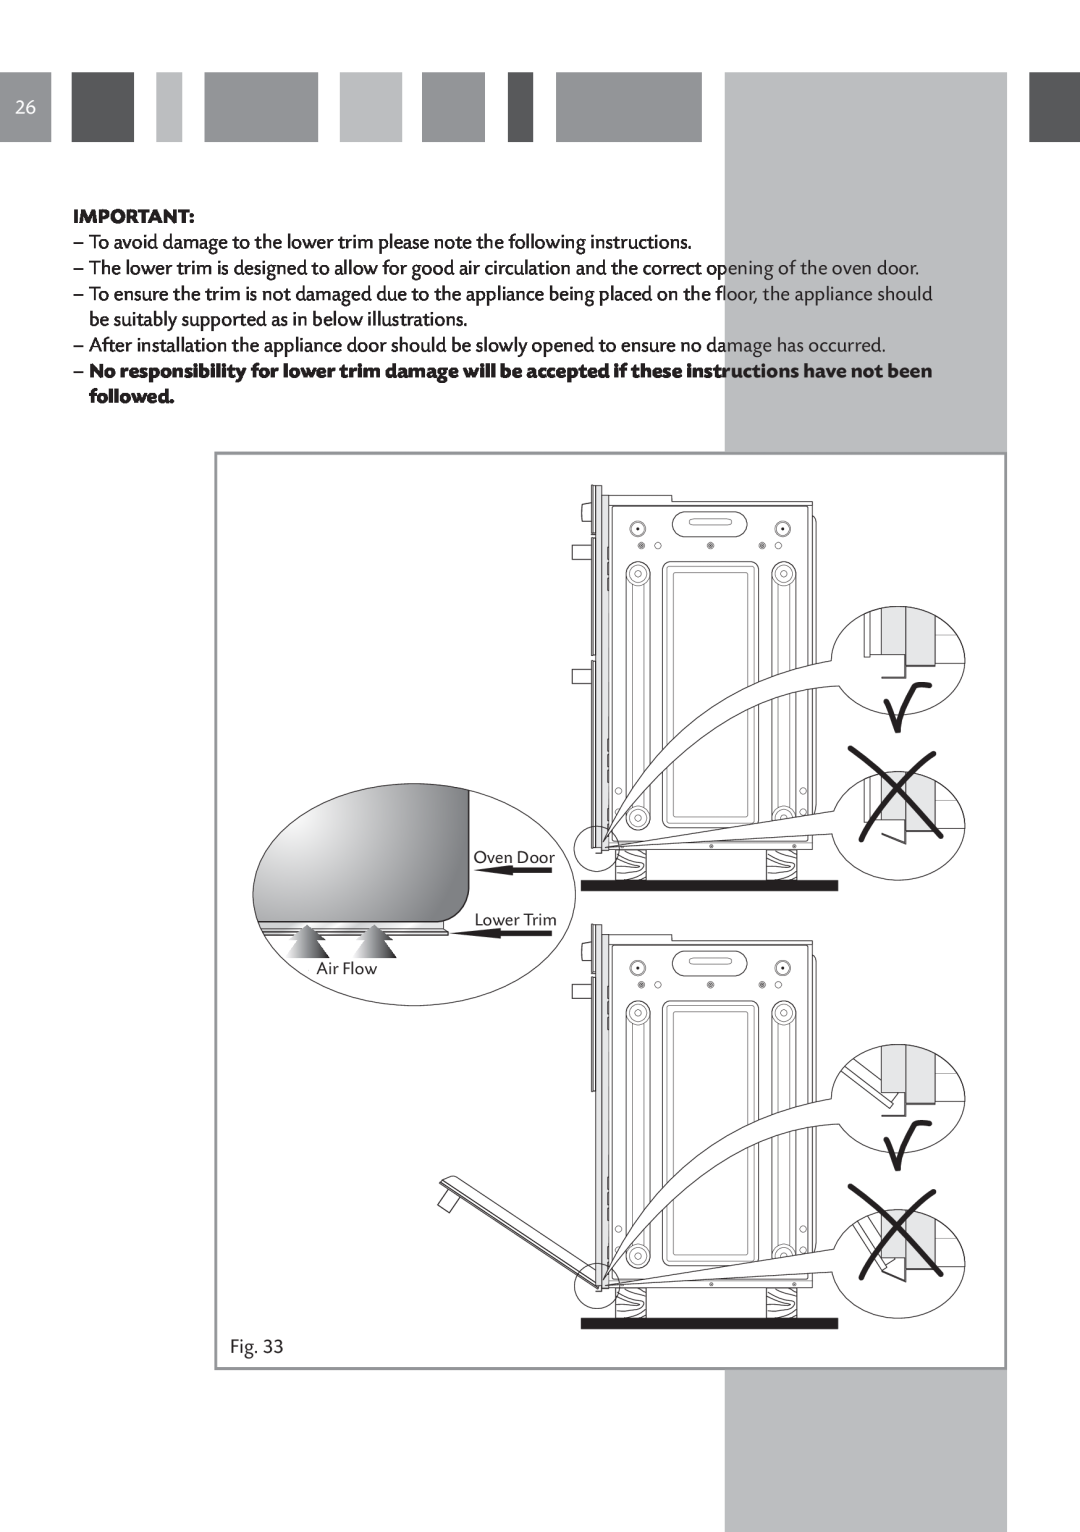 CDA DC930 manual Air Flow, Oven Door, Lower Trim 